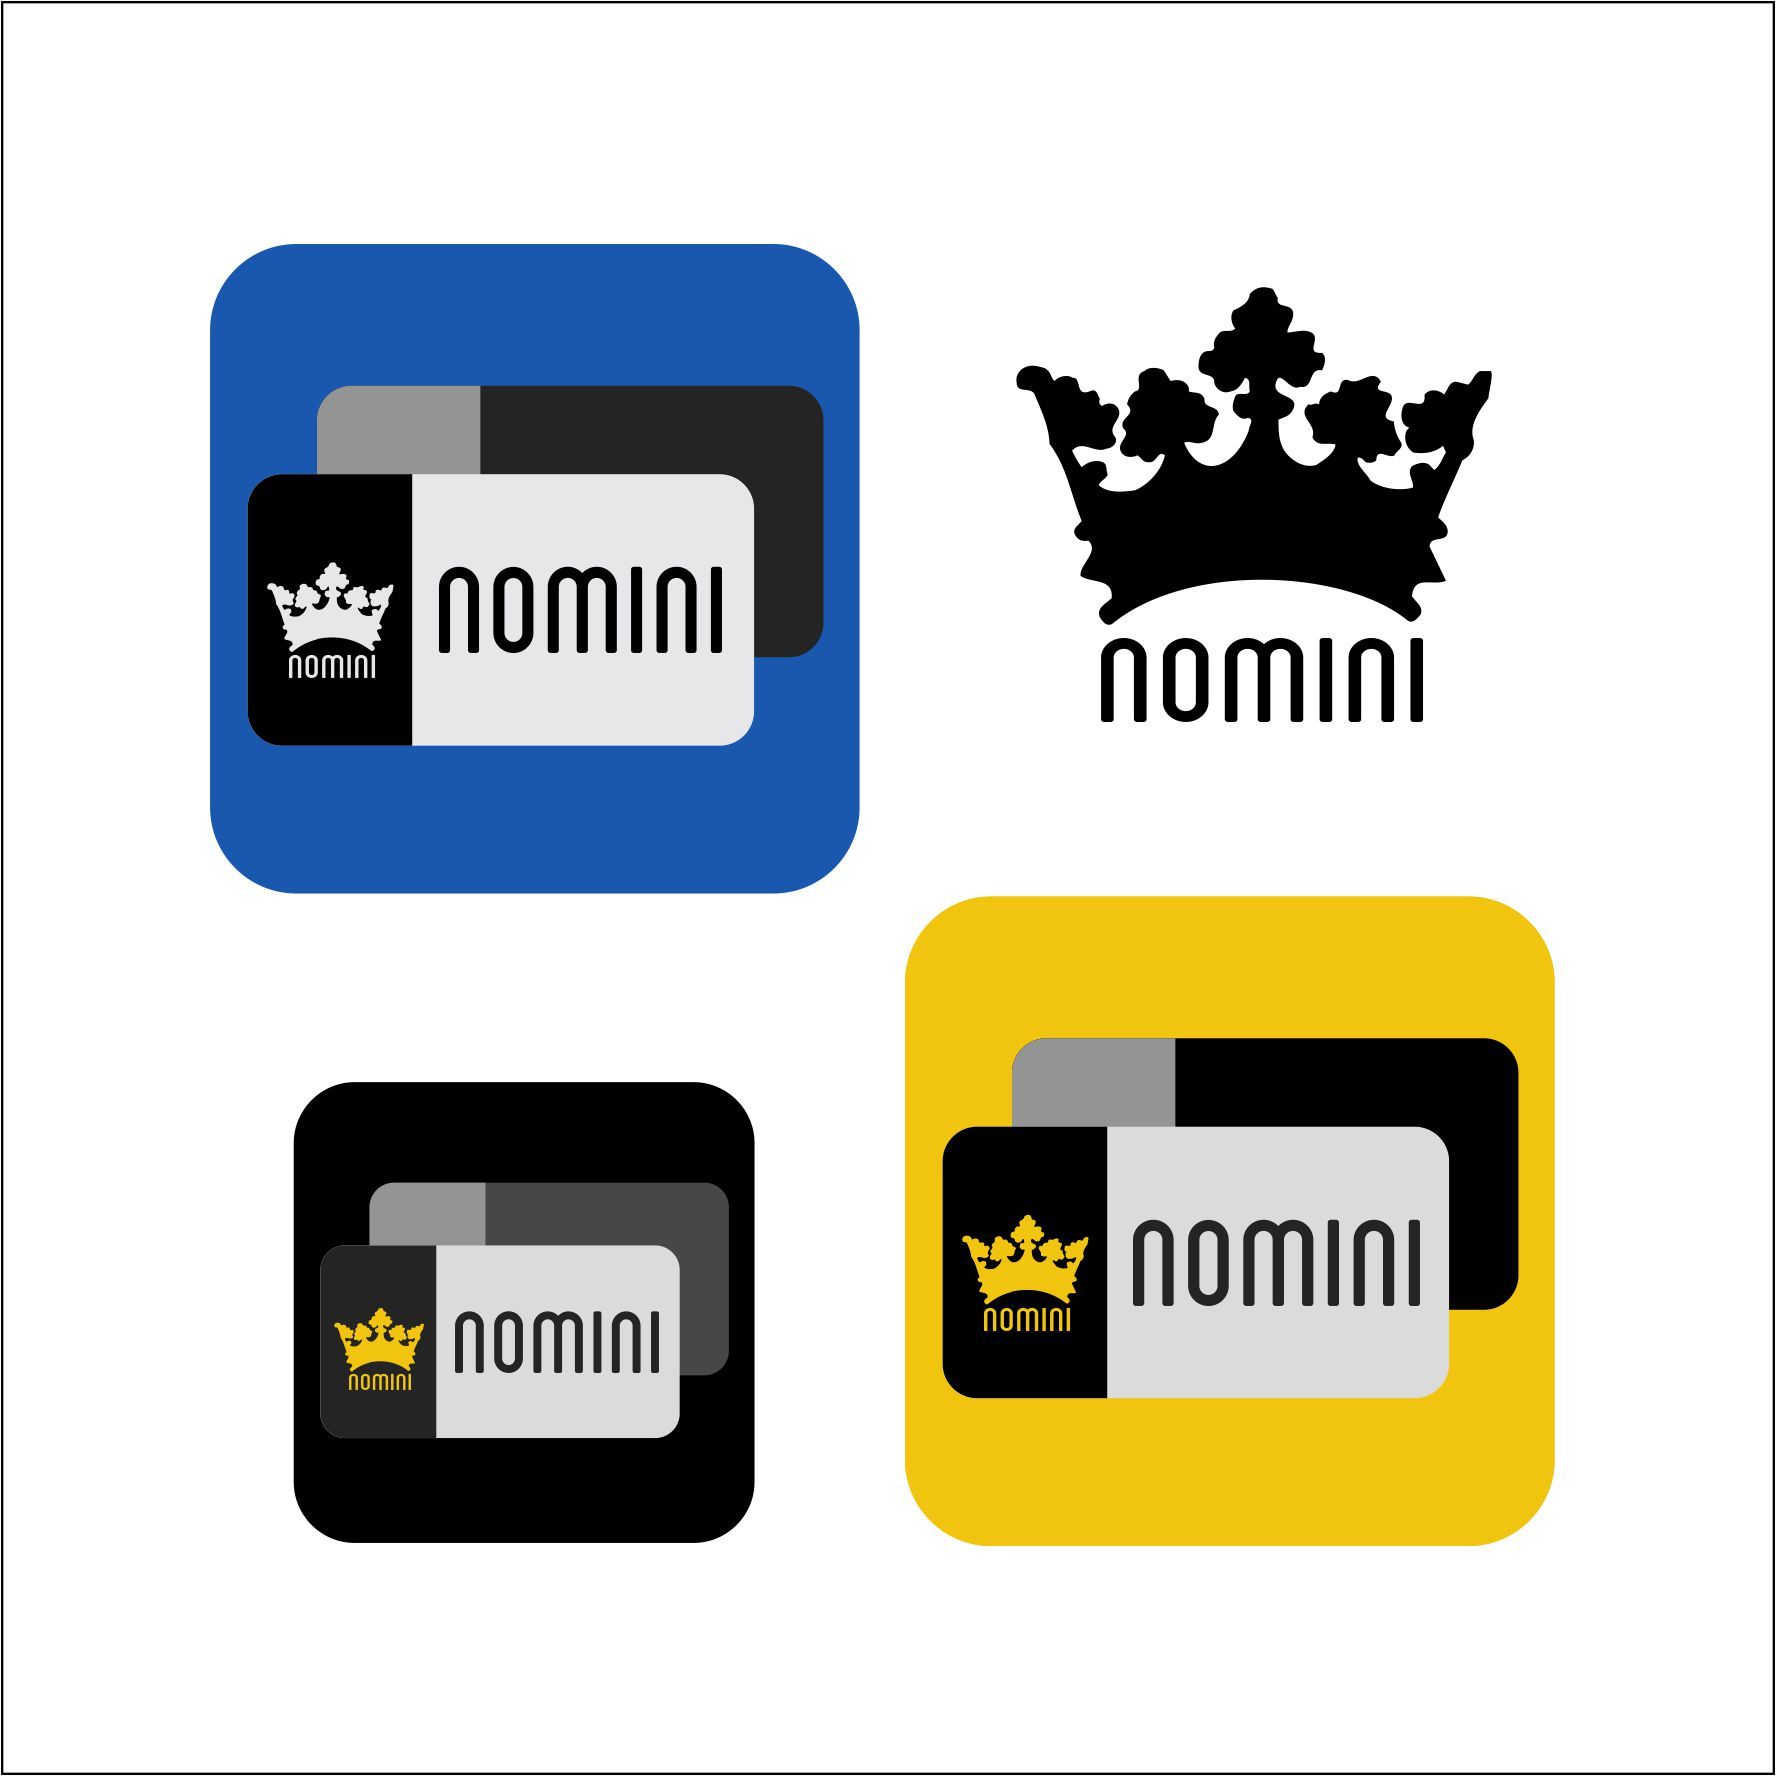 Логотип и иконка для iOS-приложения Nomini - дизайнер AlexZab